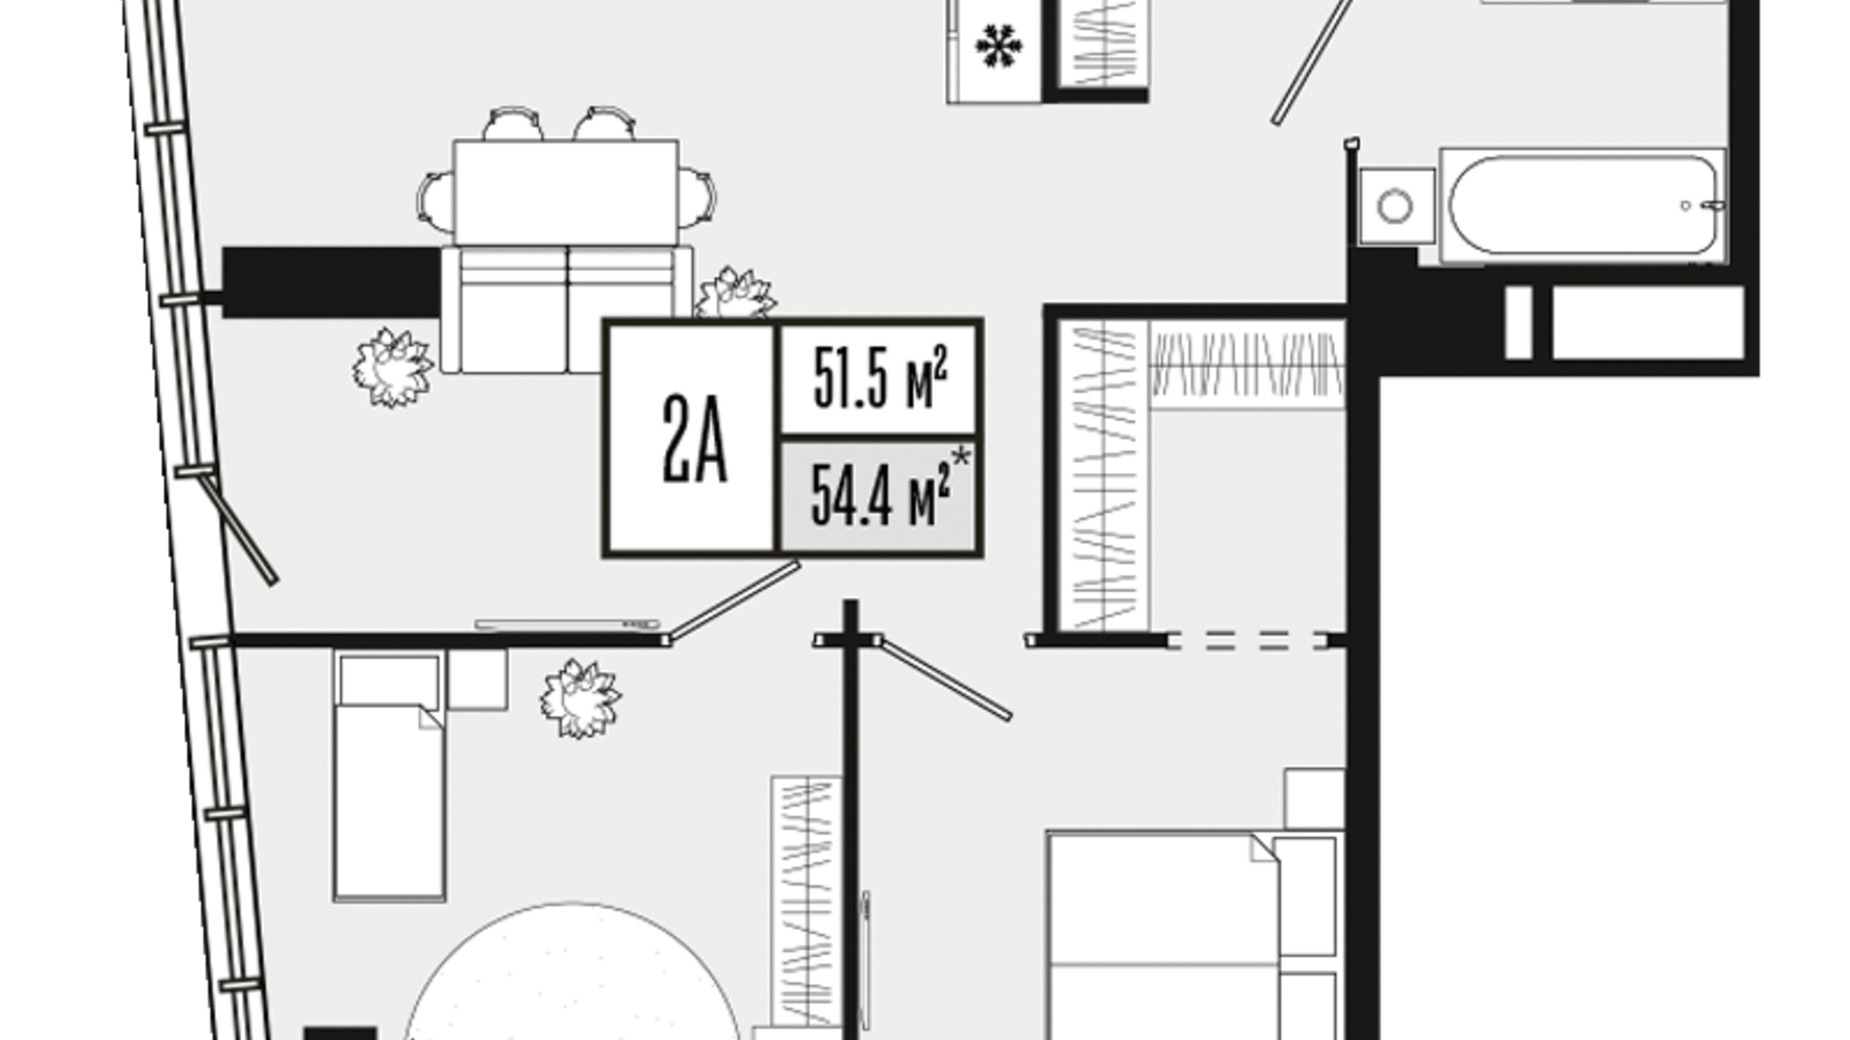 Планировка 2-комнатной квартиры в ЖК Mont Blan 51.5 м², фото 590162